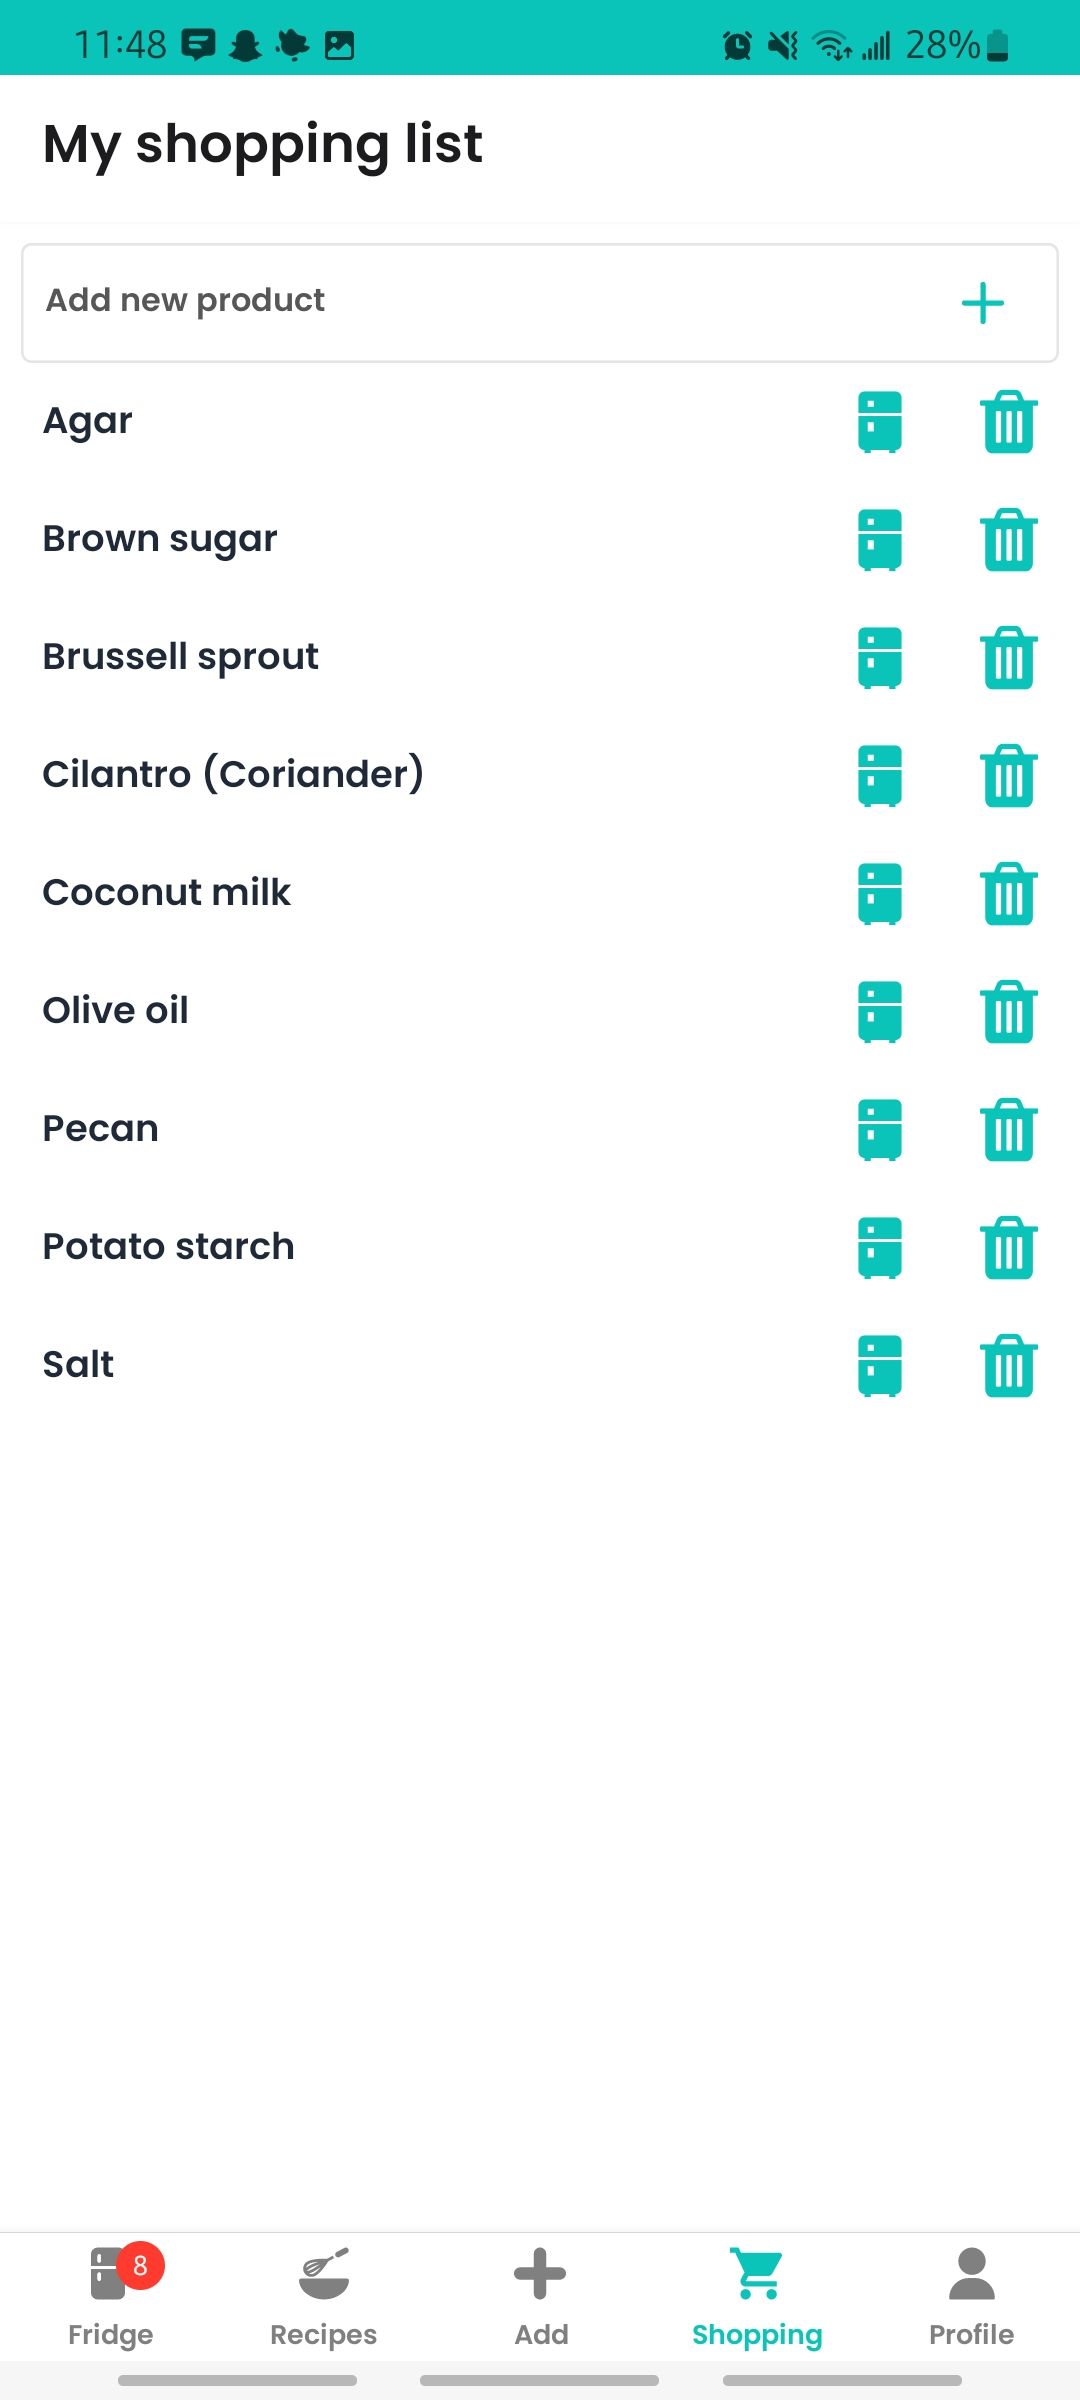 my shopping list screen in emptymyfridge app